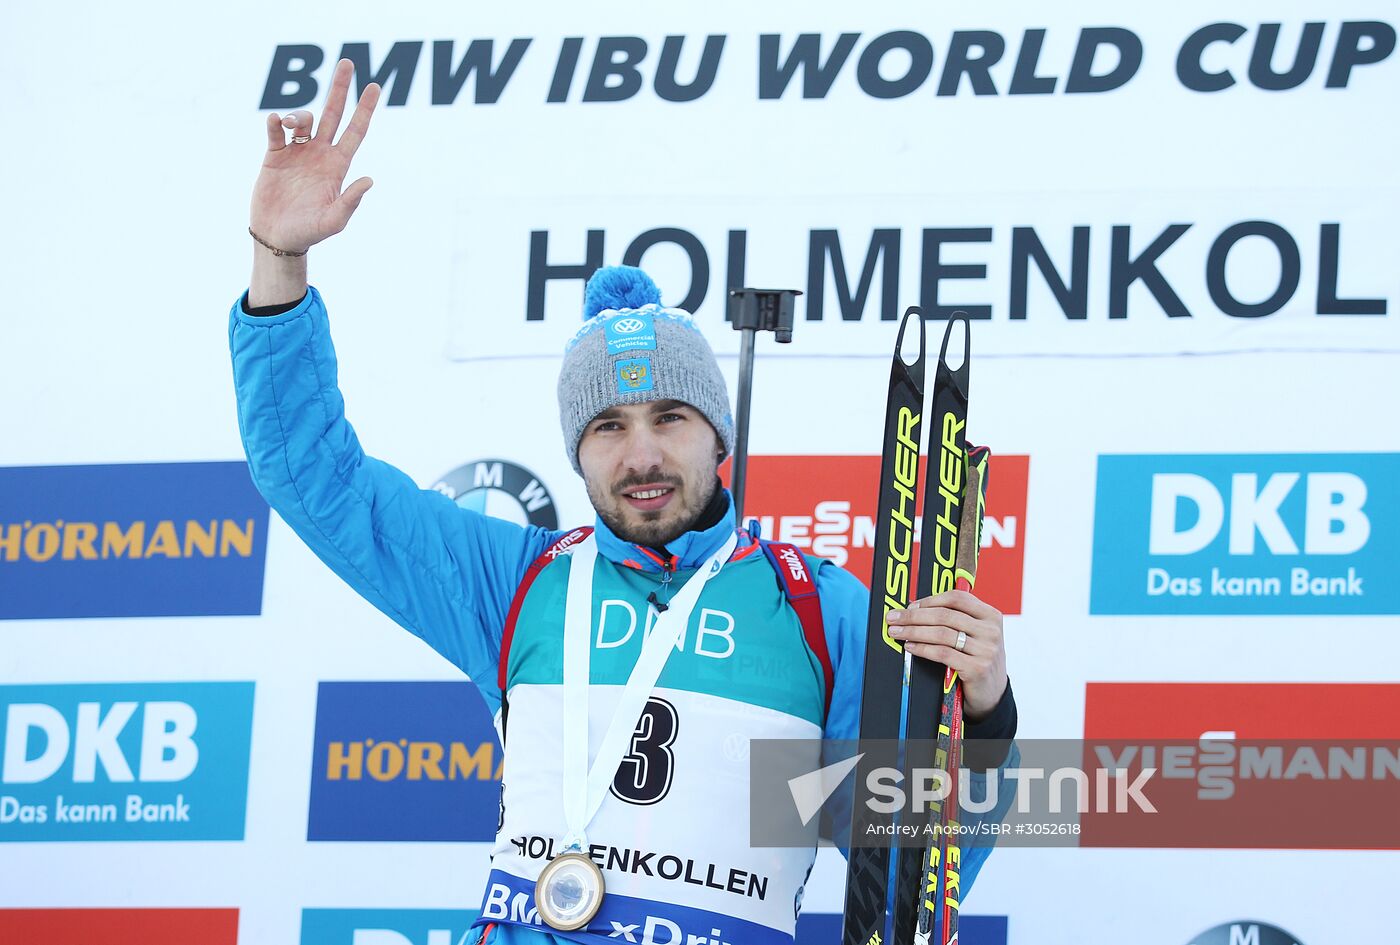 BMW IBU World Cup Biathlon 9. Men's pursuit